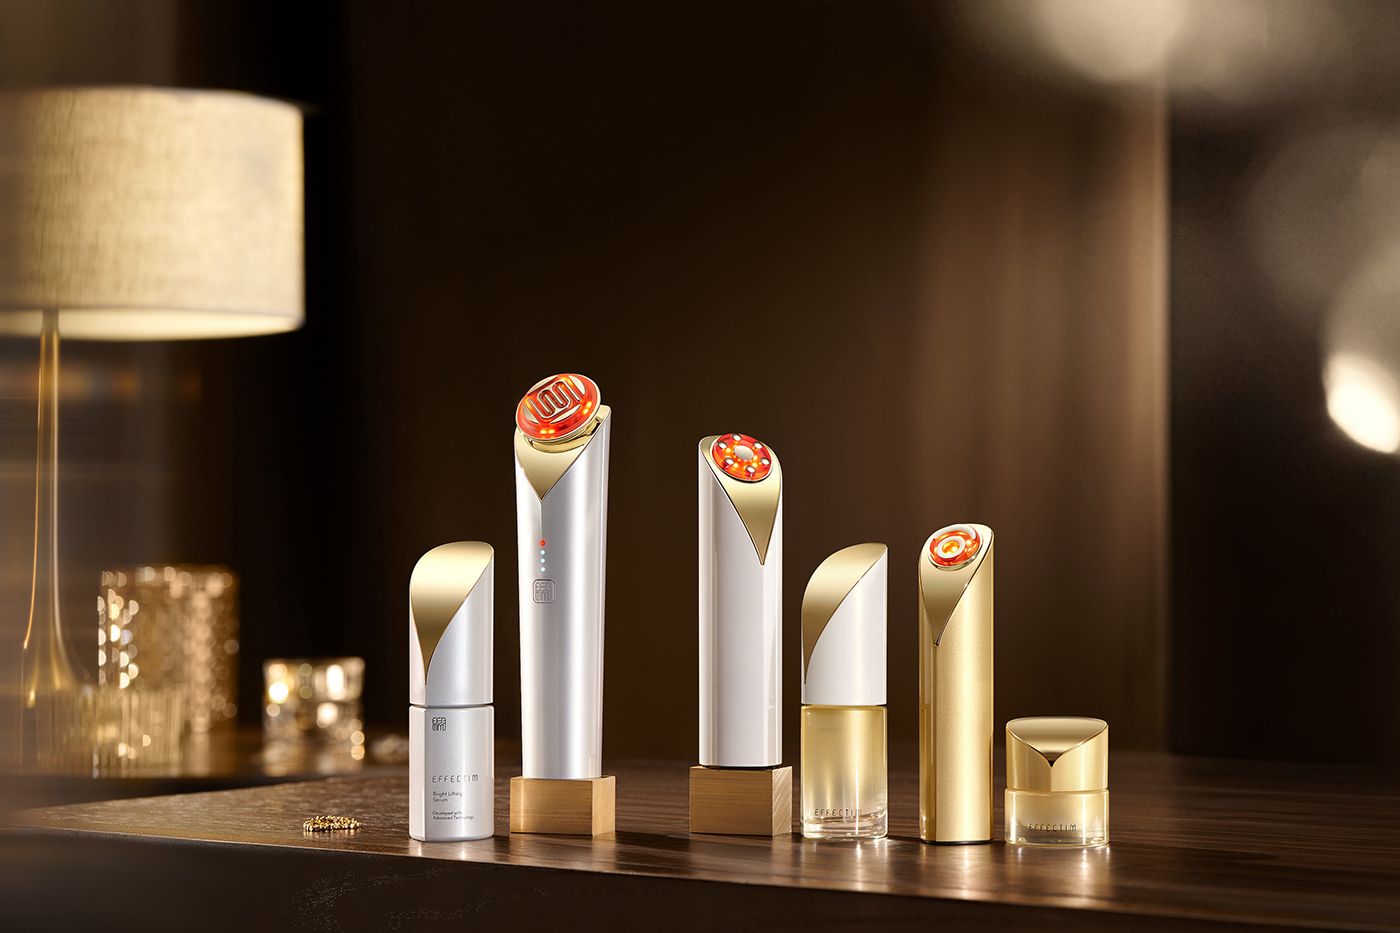 Shiseido beauty Beauty instrument 产品摄影 静物摄影 电商摄影 创意摄影 工业设计 护肤品 资生堂